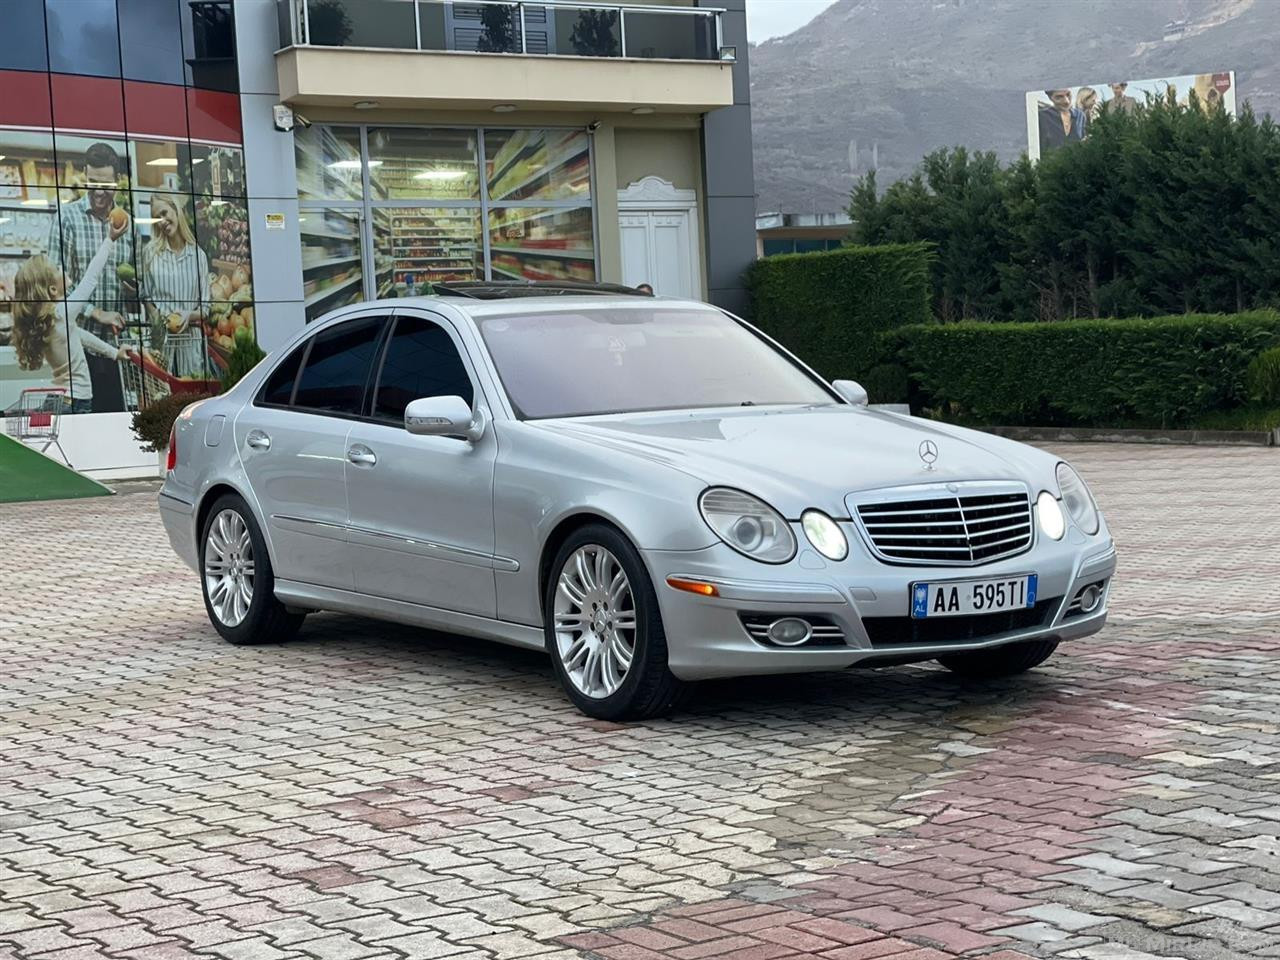 Mercedes Benz E350